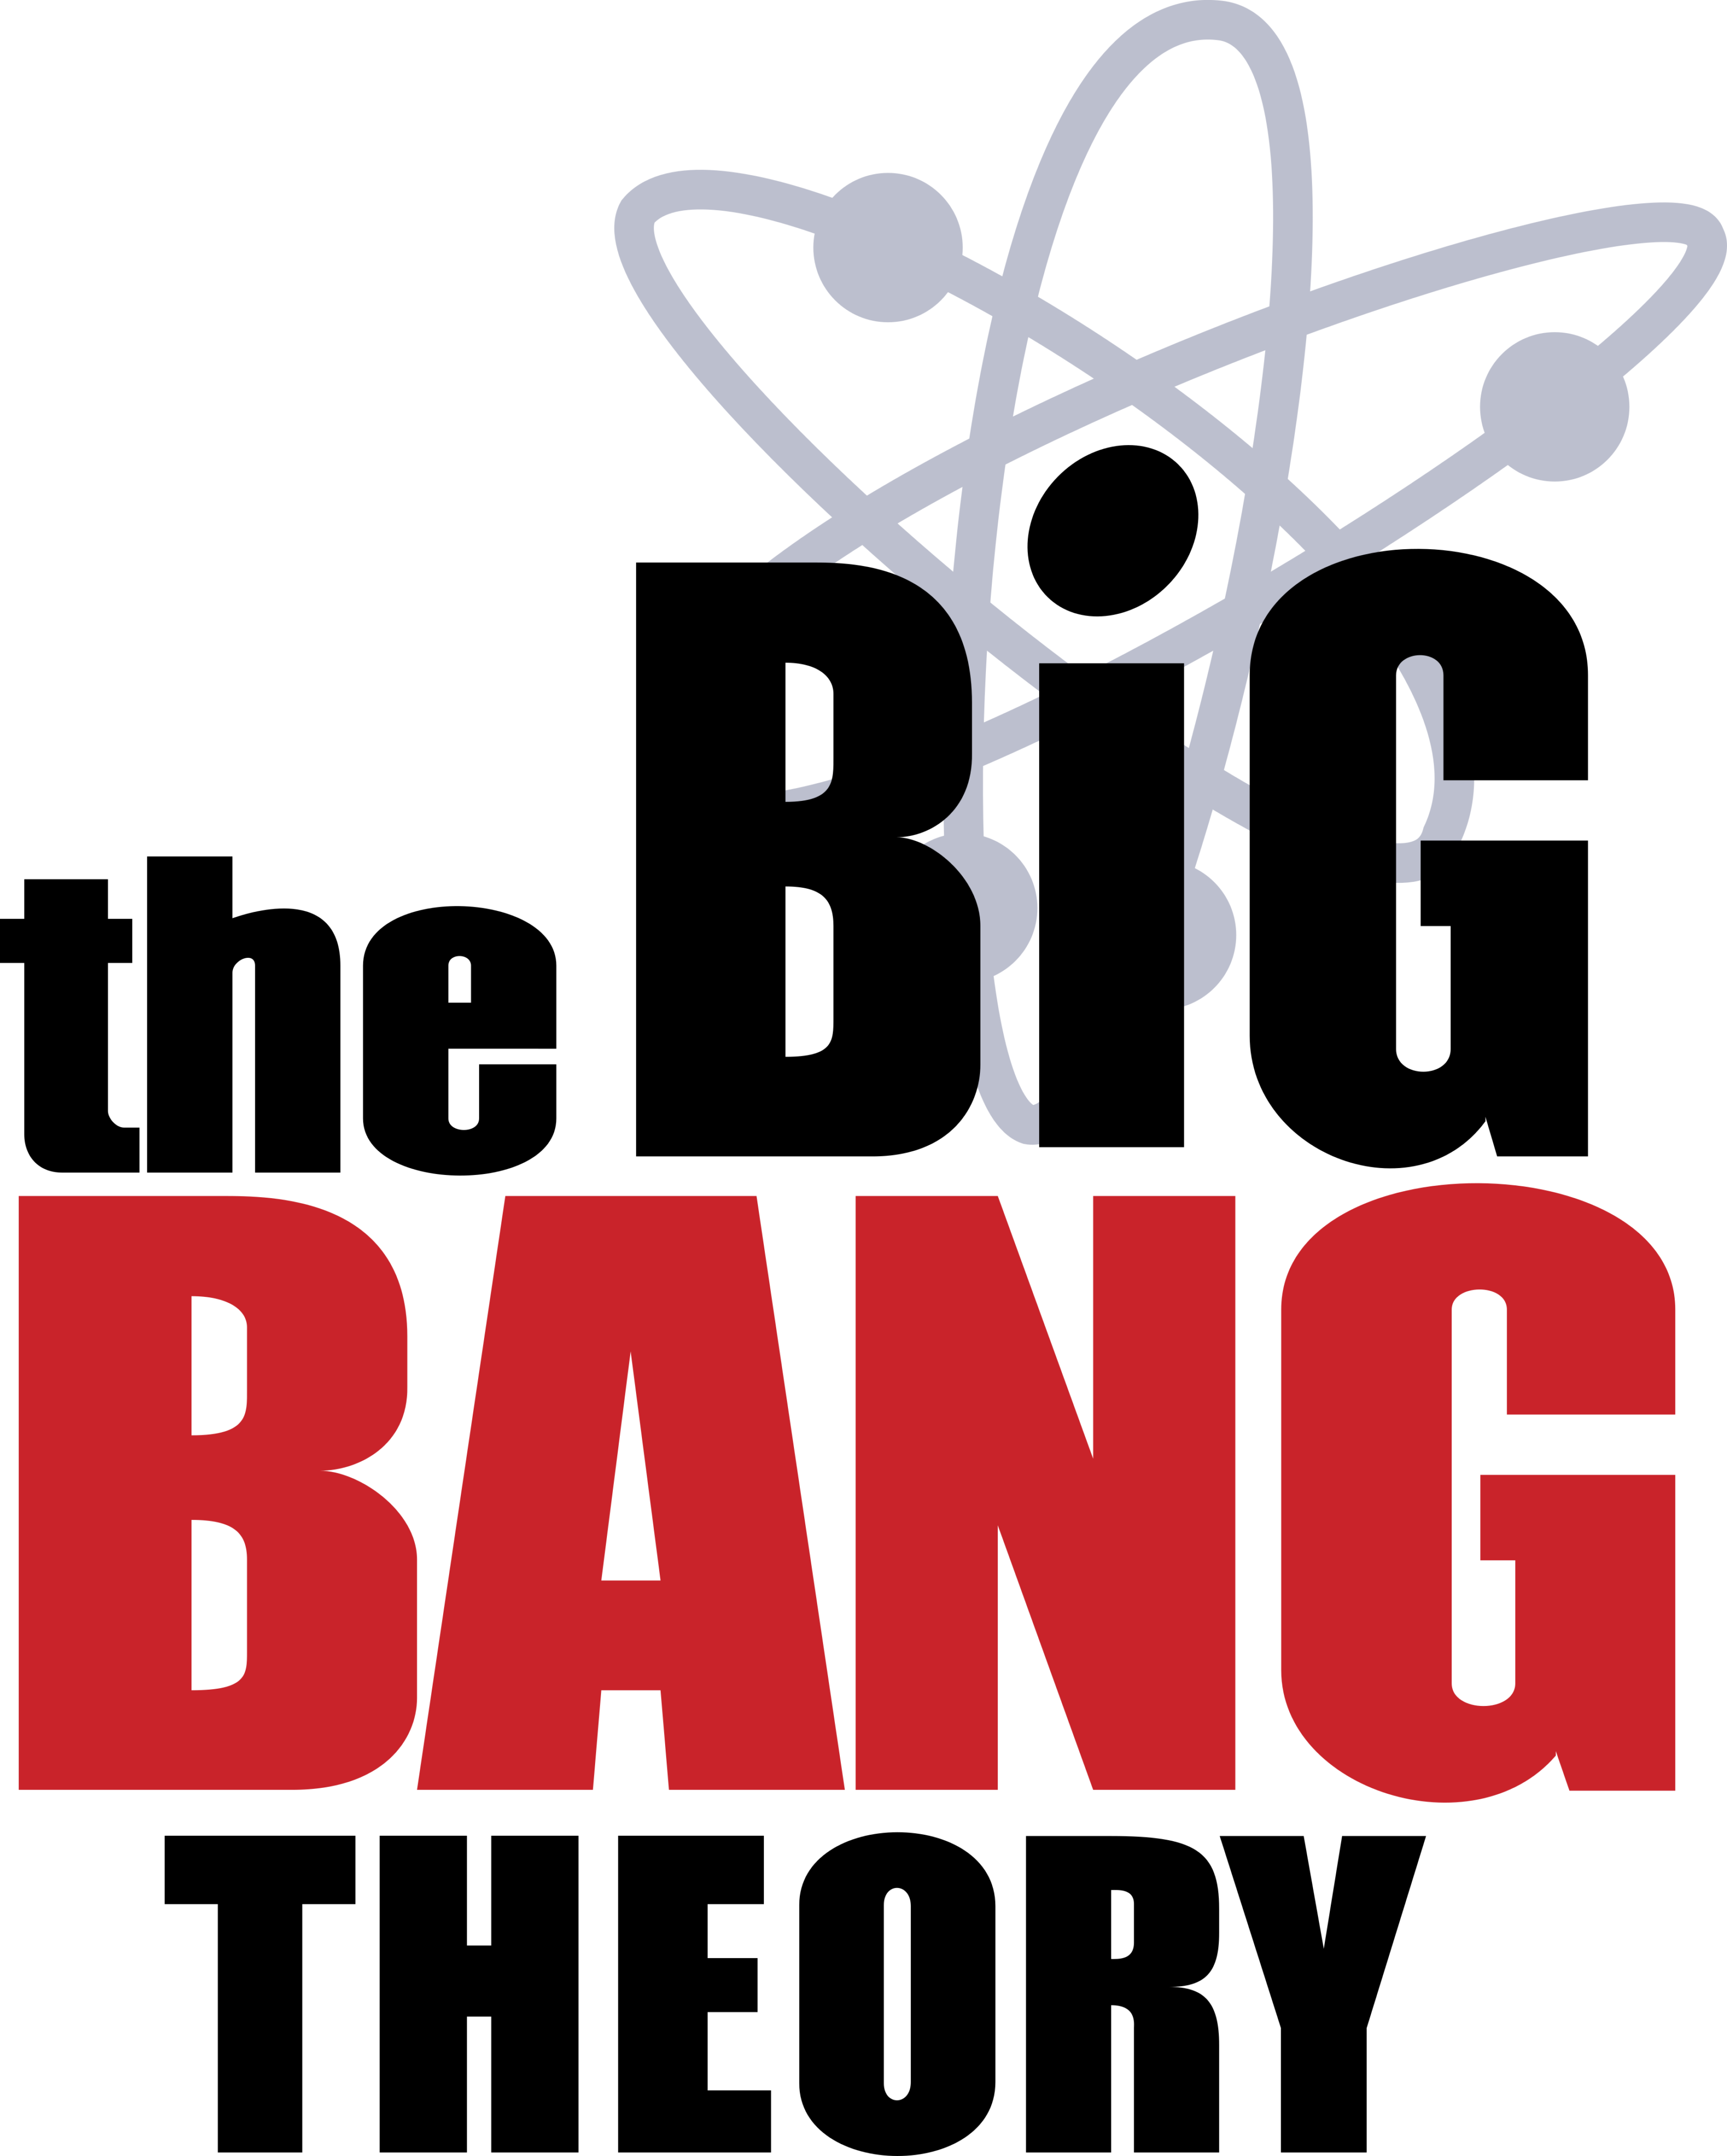 The Big Bang Theory Logo.